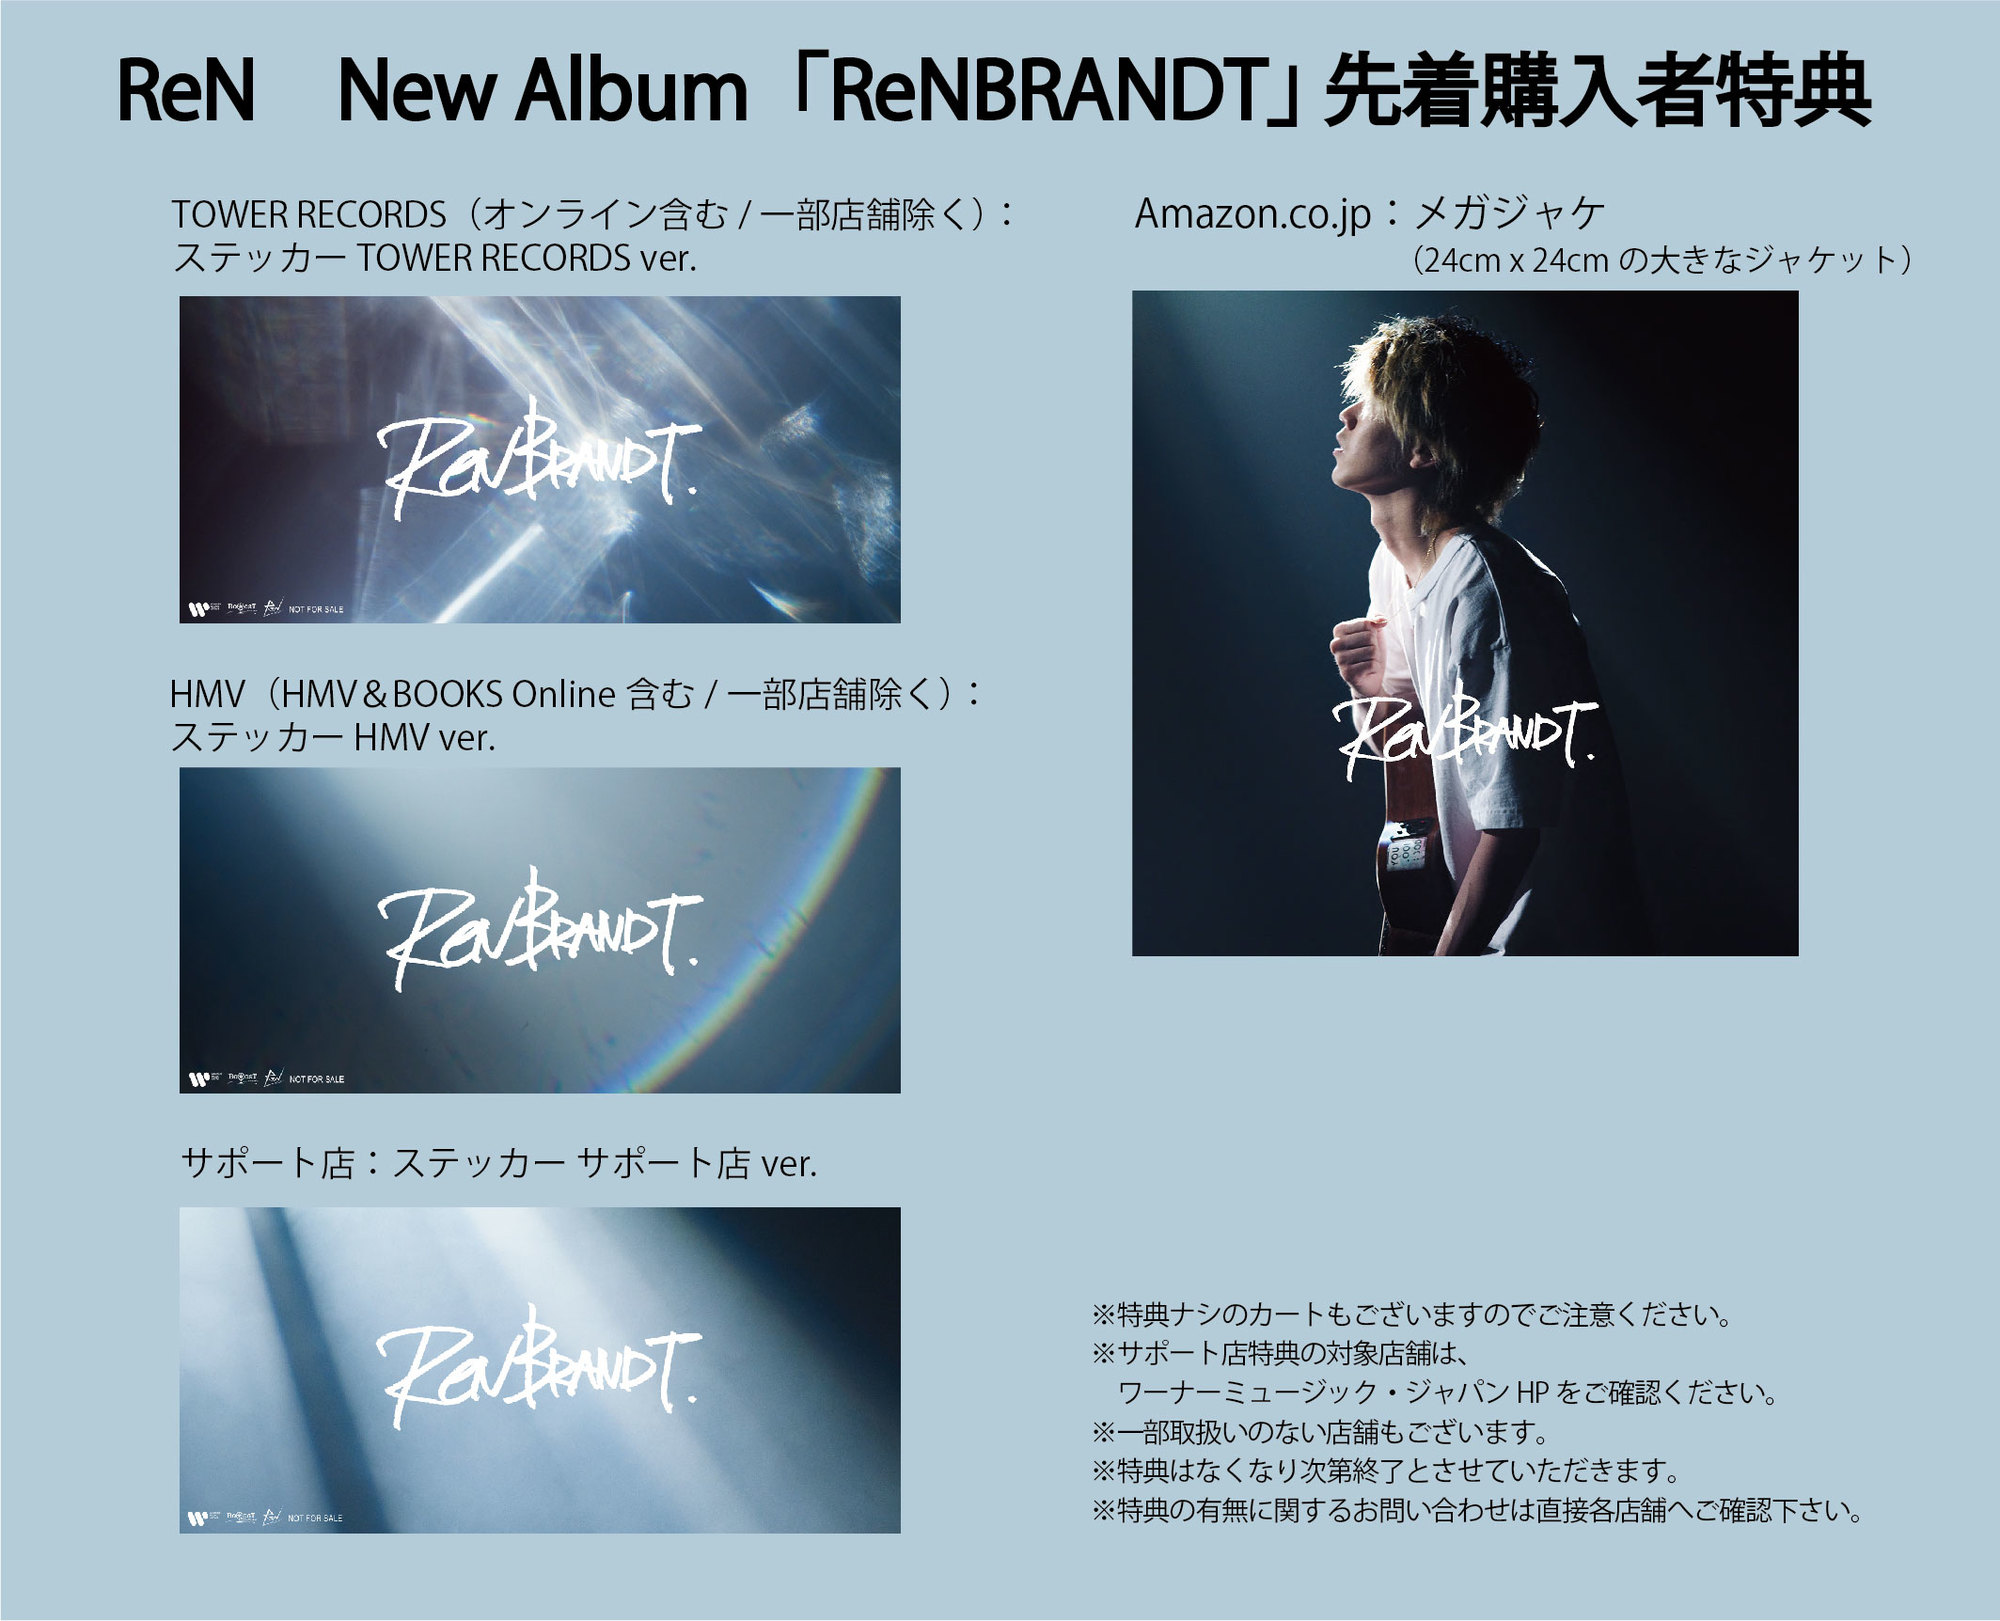 9/8発売 アルバム「ReNBRANDT」先着購入特典デザイン＆サポート店対象店舗発表！また早期予約特典CDの収録楽曲決定！ | ReN |  Warner Music Japan